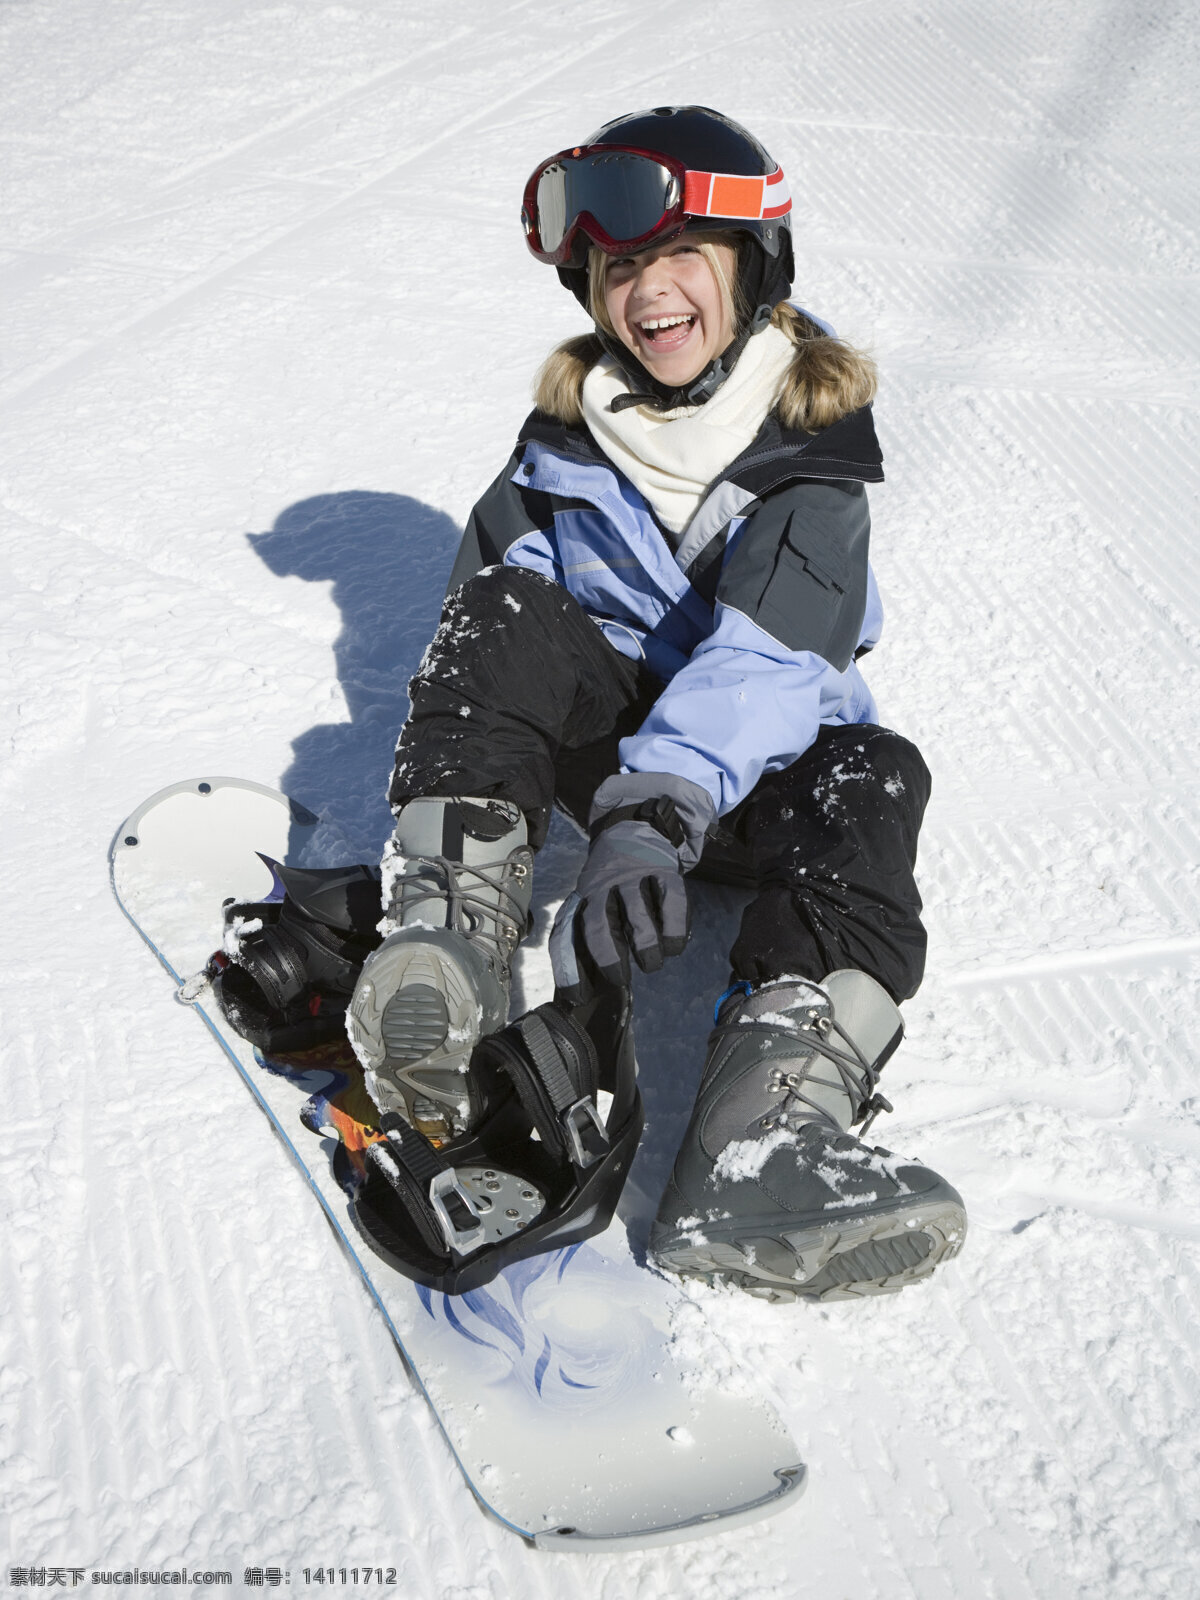 滑雪板 上 女孩 滑雪场 滑雪运动 滑雪服 滑雪工具 滑雪图片 生活百科